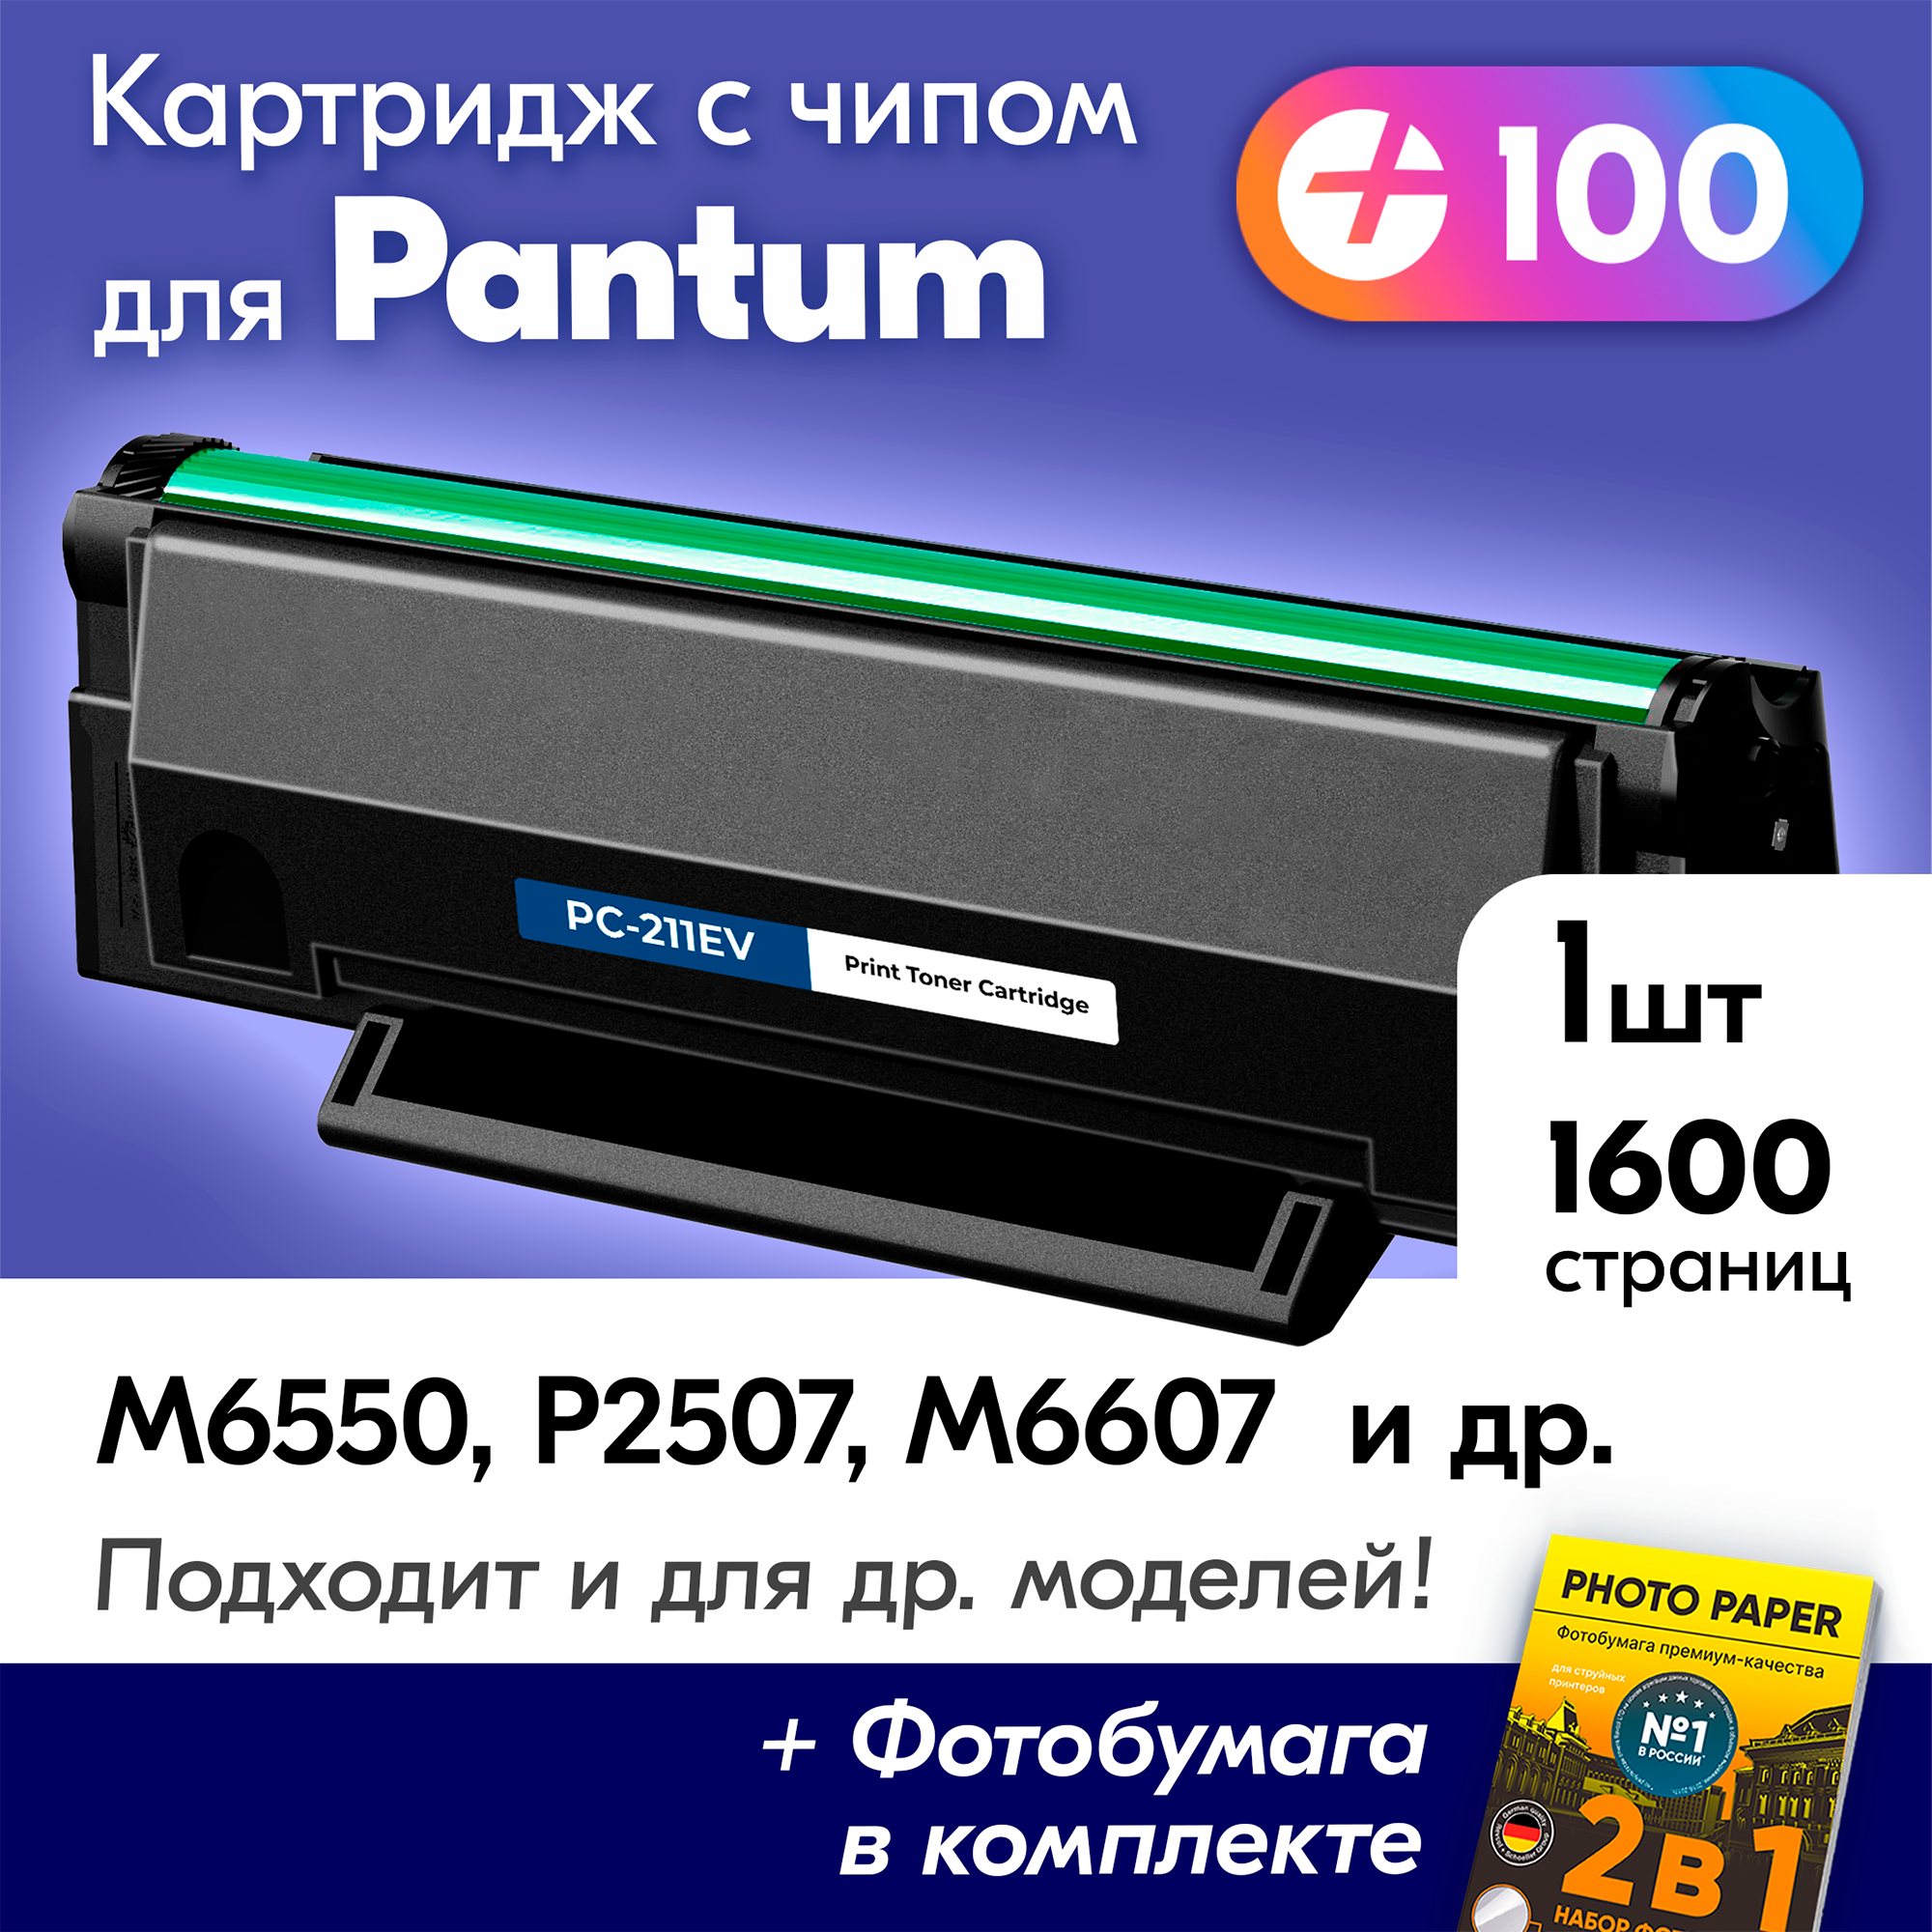 Картридж для Pantum PC-211EV, Pantum M6507W, M6500, M6500W, M6550NW, P2207 с краской (тонером) черный новый заправляемый, 1600 копий, с чипом